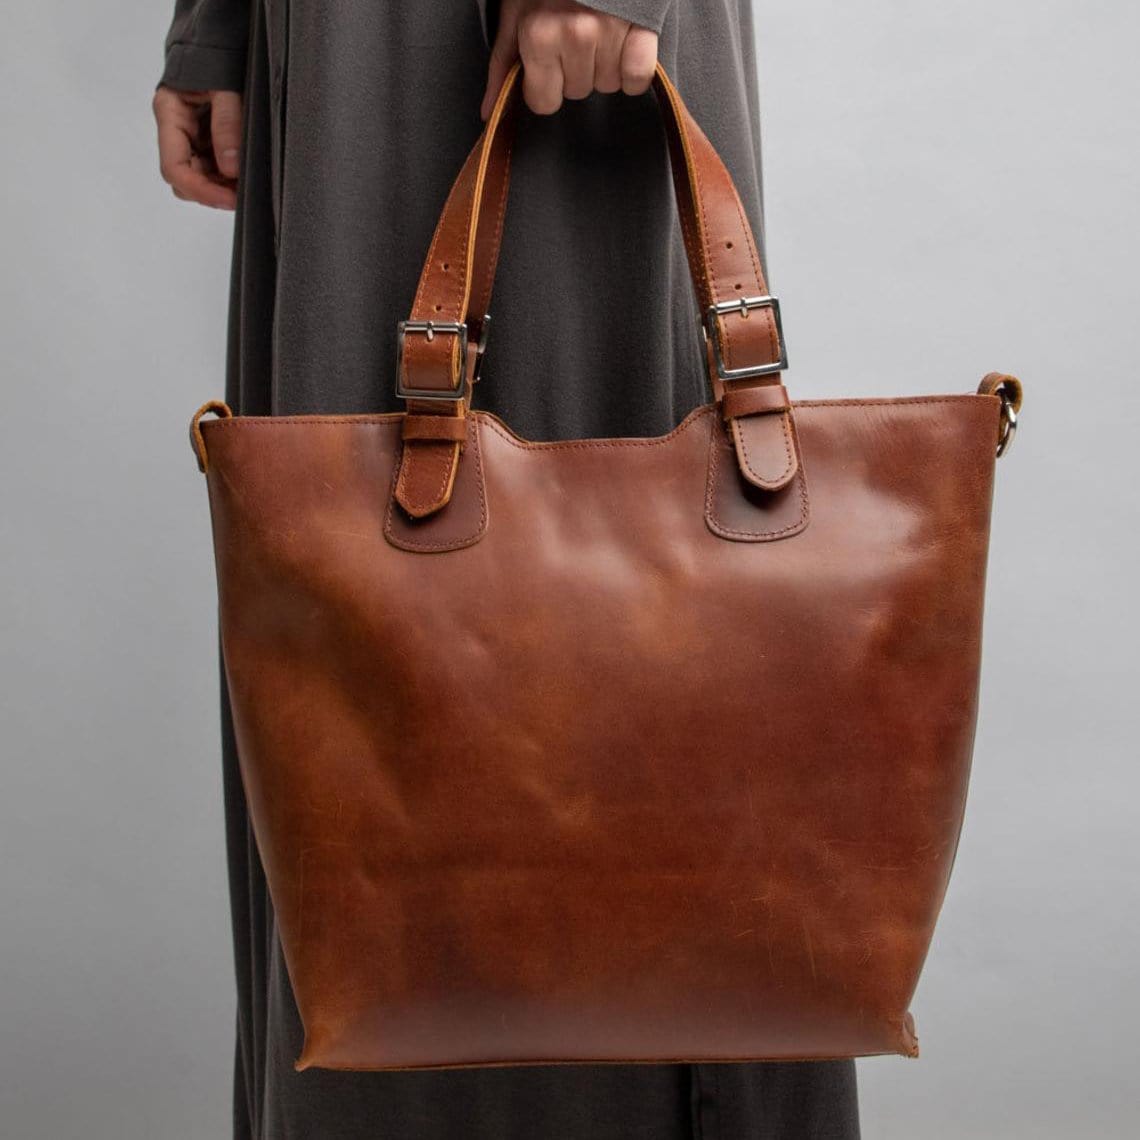 kinnoti Leather Tote Bag Minimal Leather Tote Bag